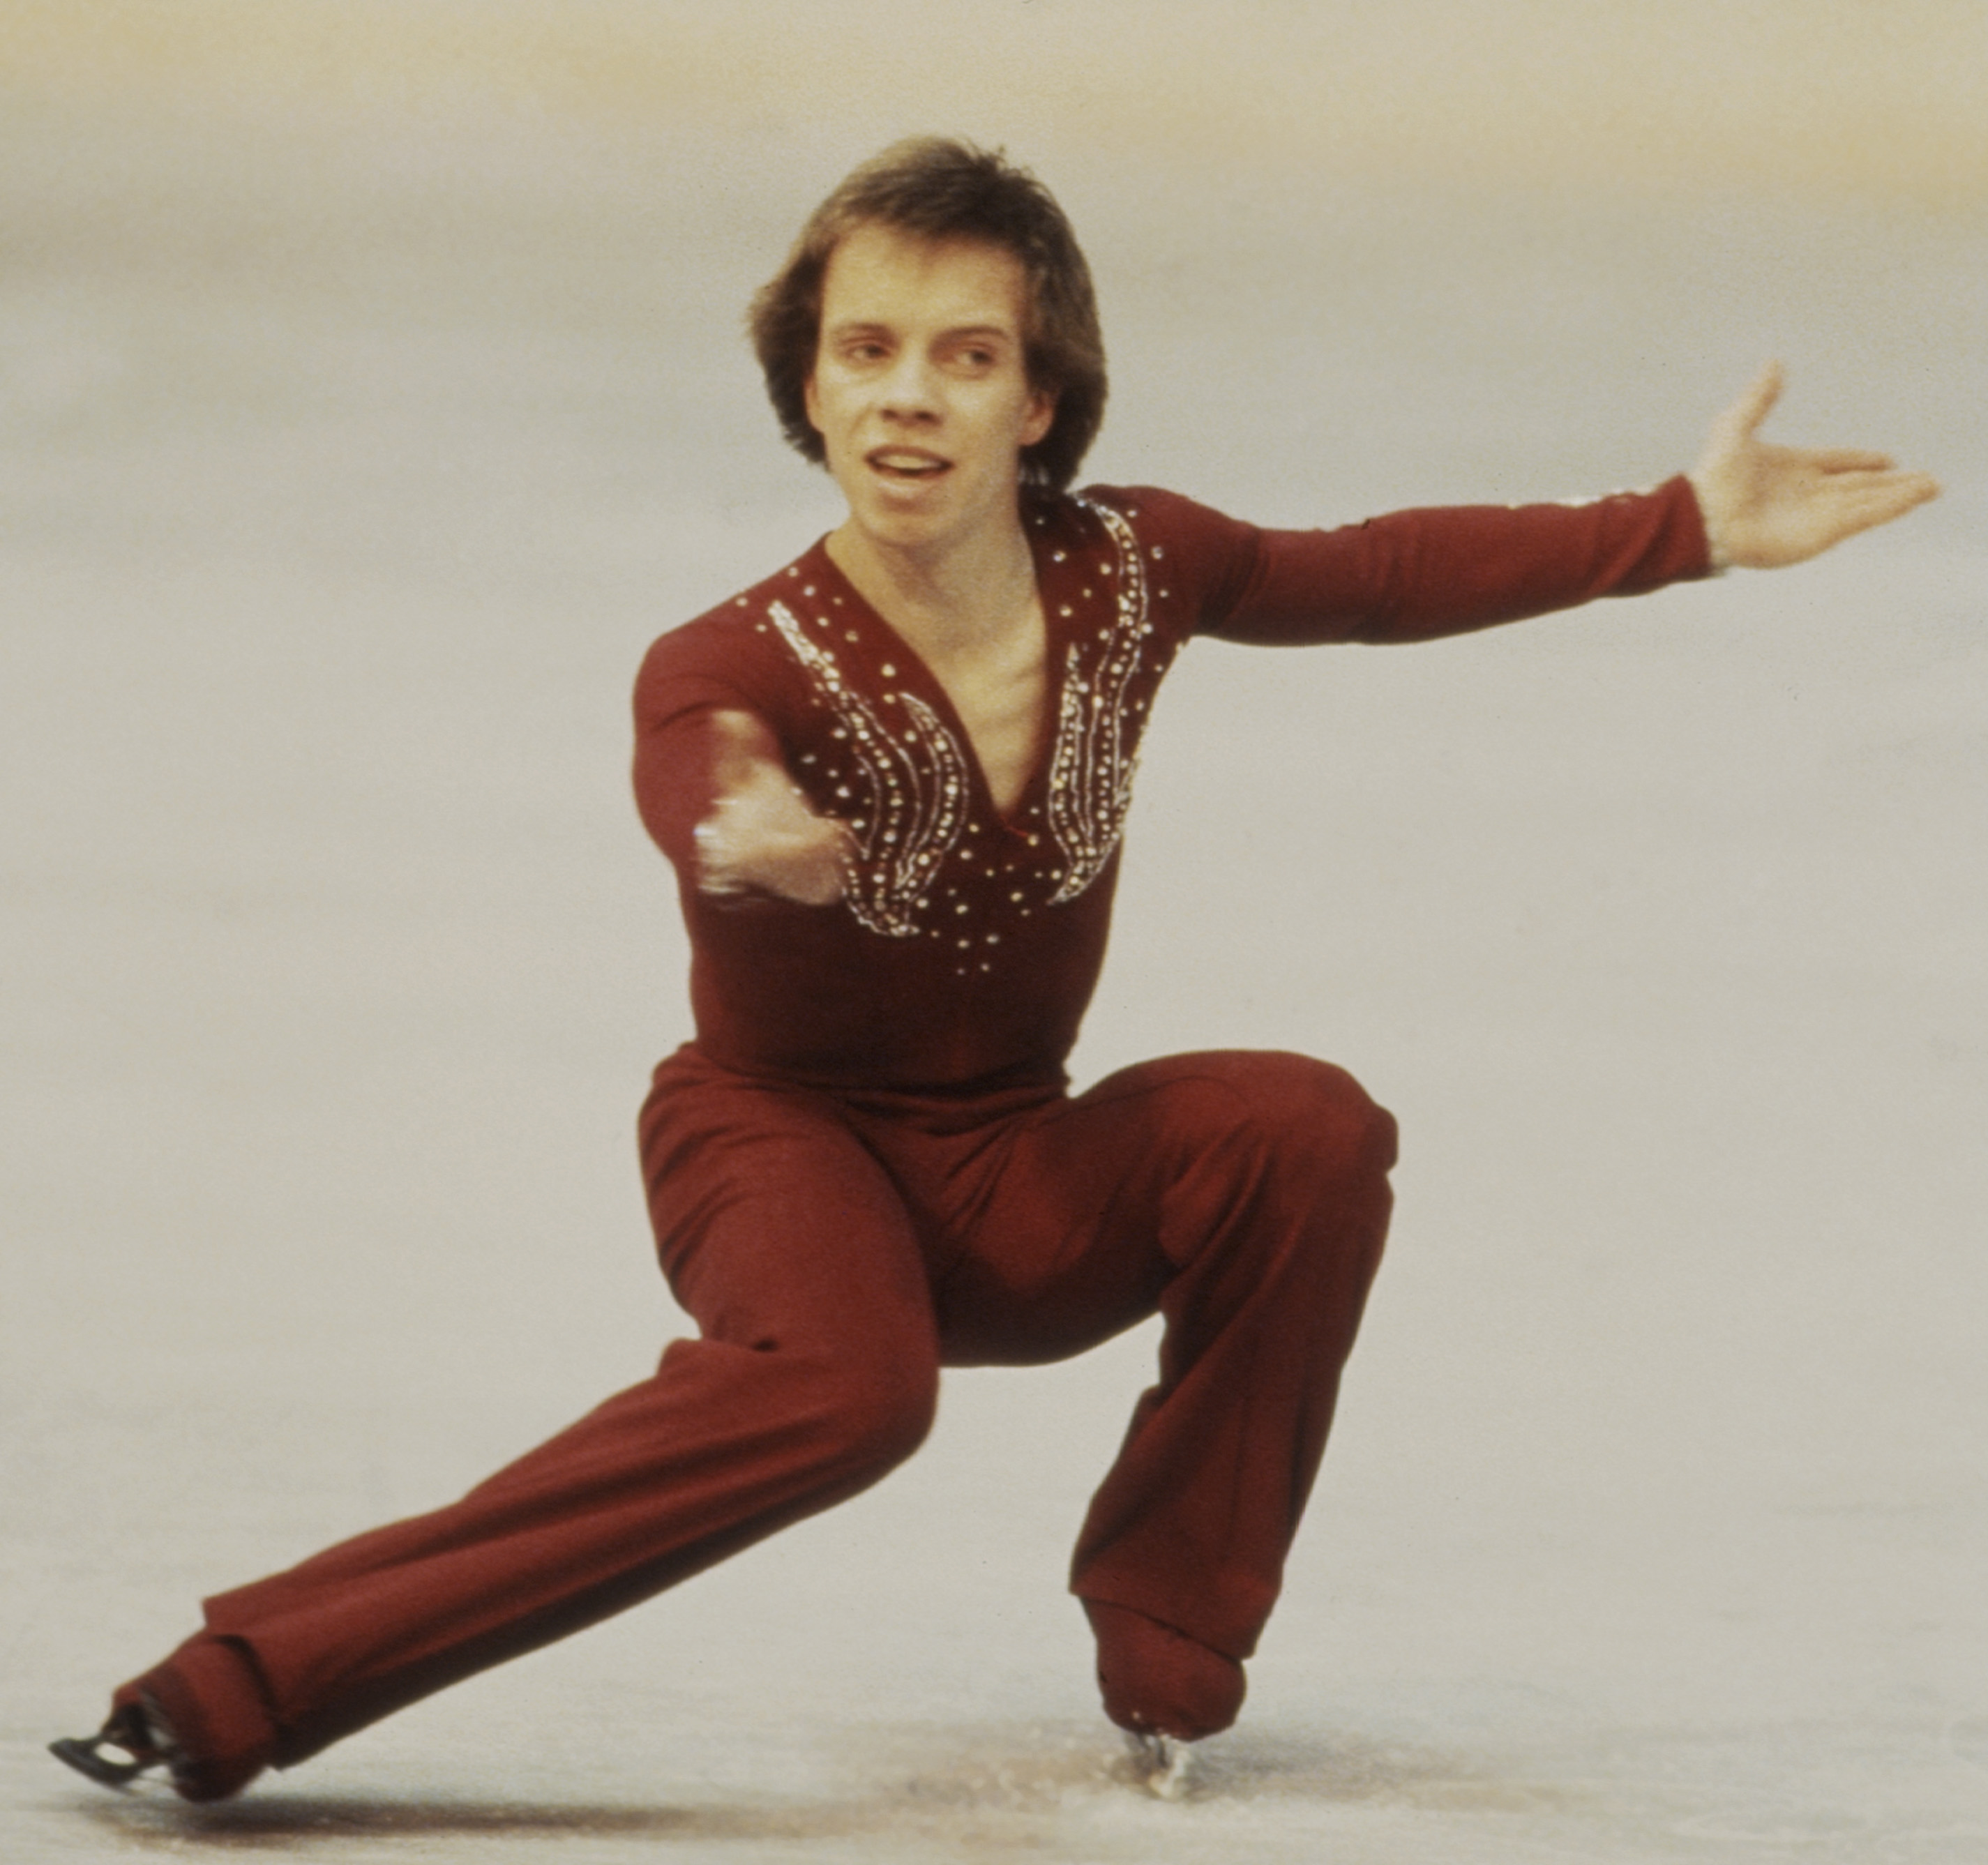 Scott Hamilton participe à l'épreuve du simple masculin aux Championnats du monde de patinage artistique le 6 mars 1981 | Source : Getty Images